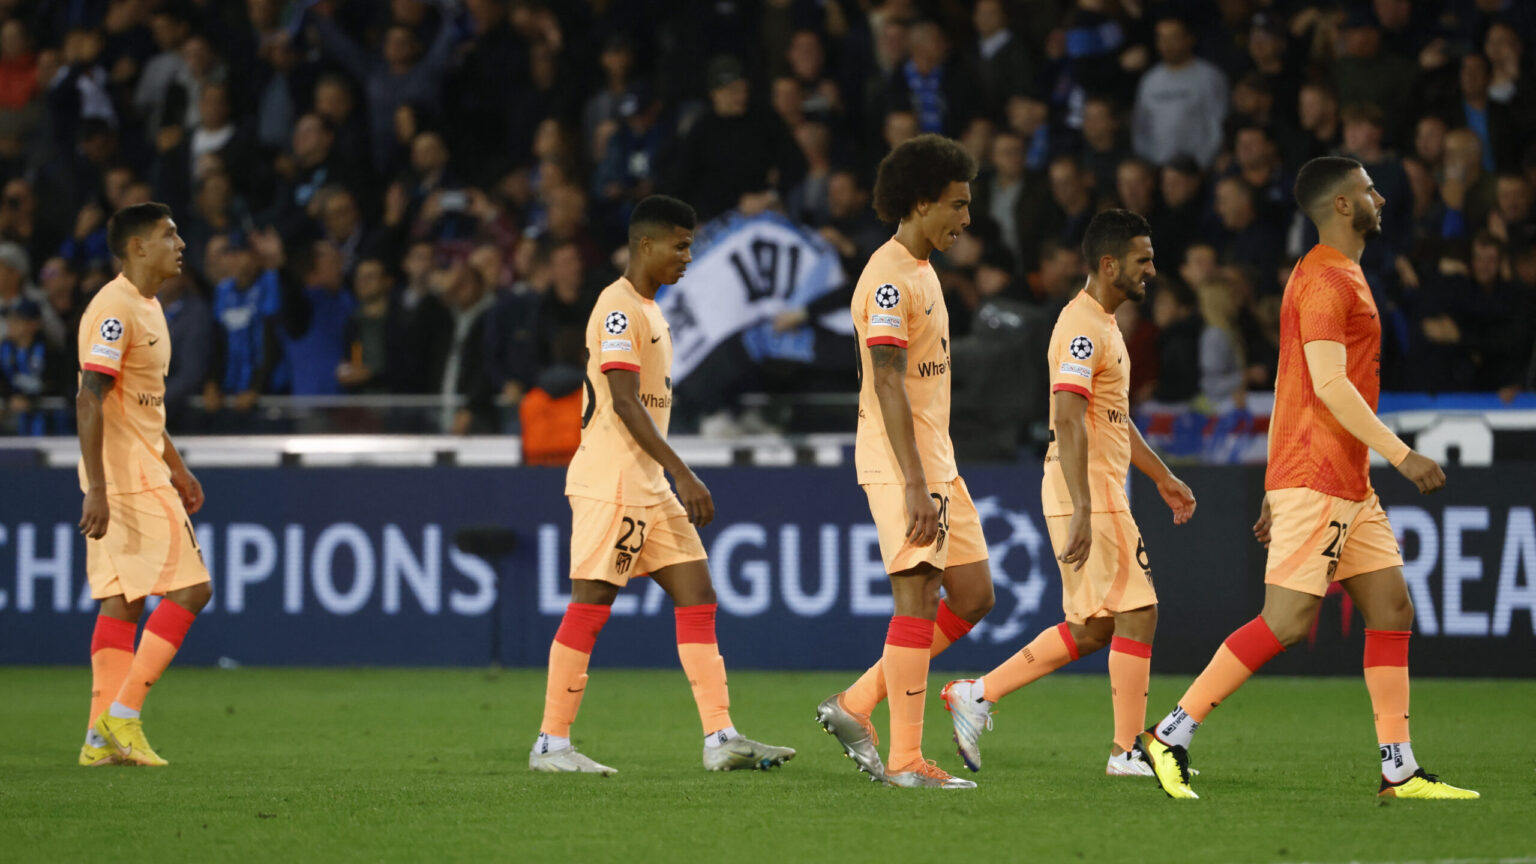 El Atlético pierde su oportunidad en Champions tras una ‘noche de Brujas’ (2-0)